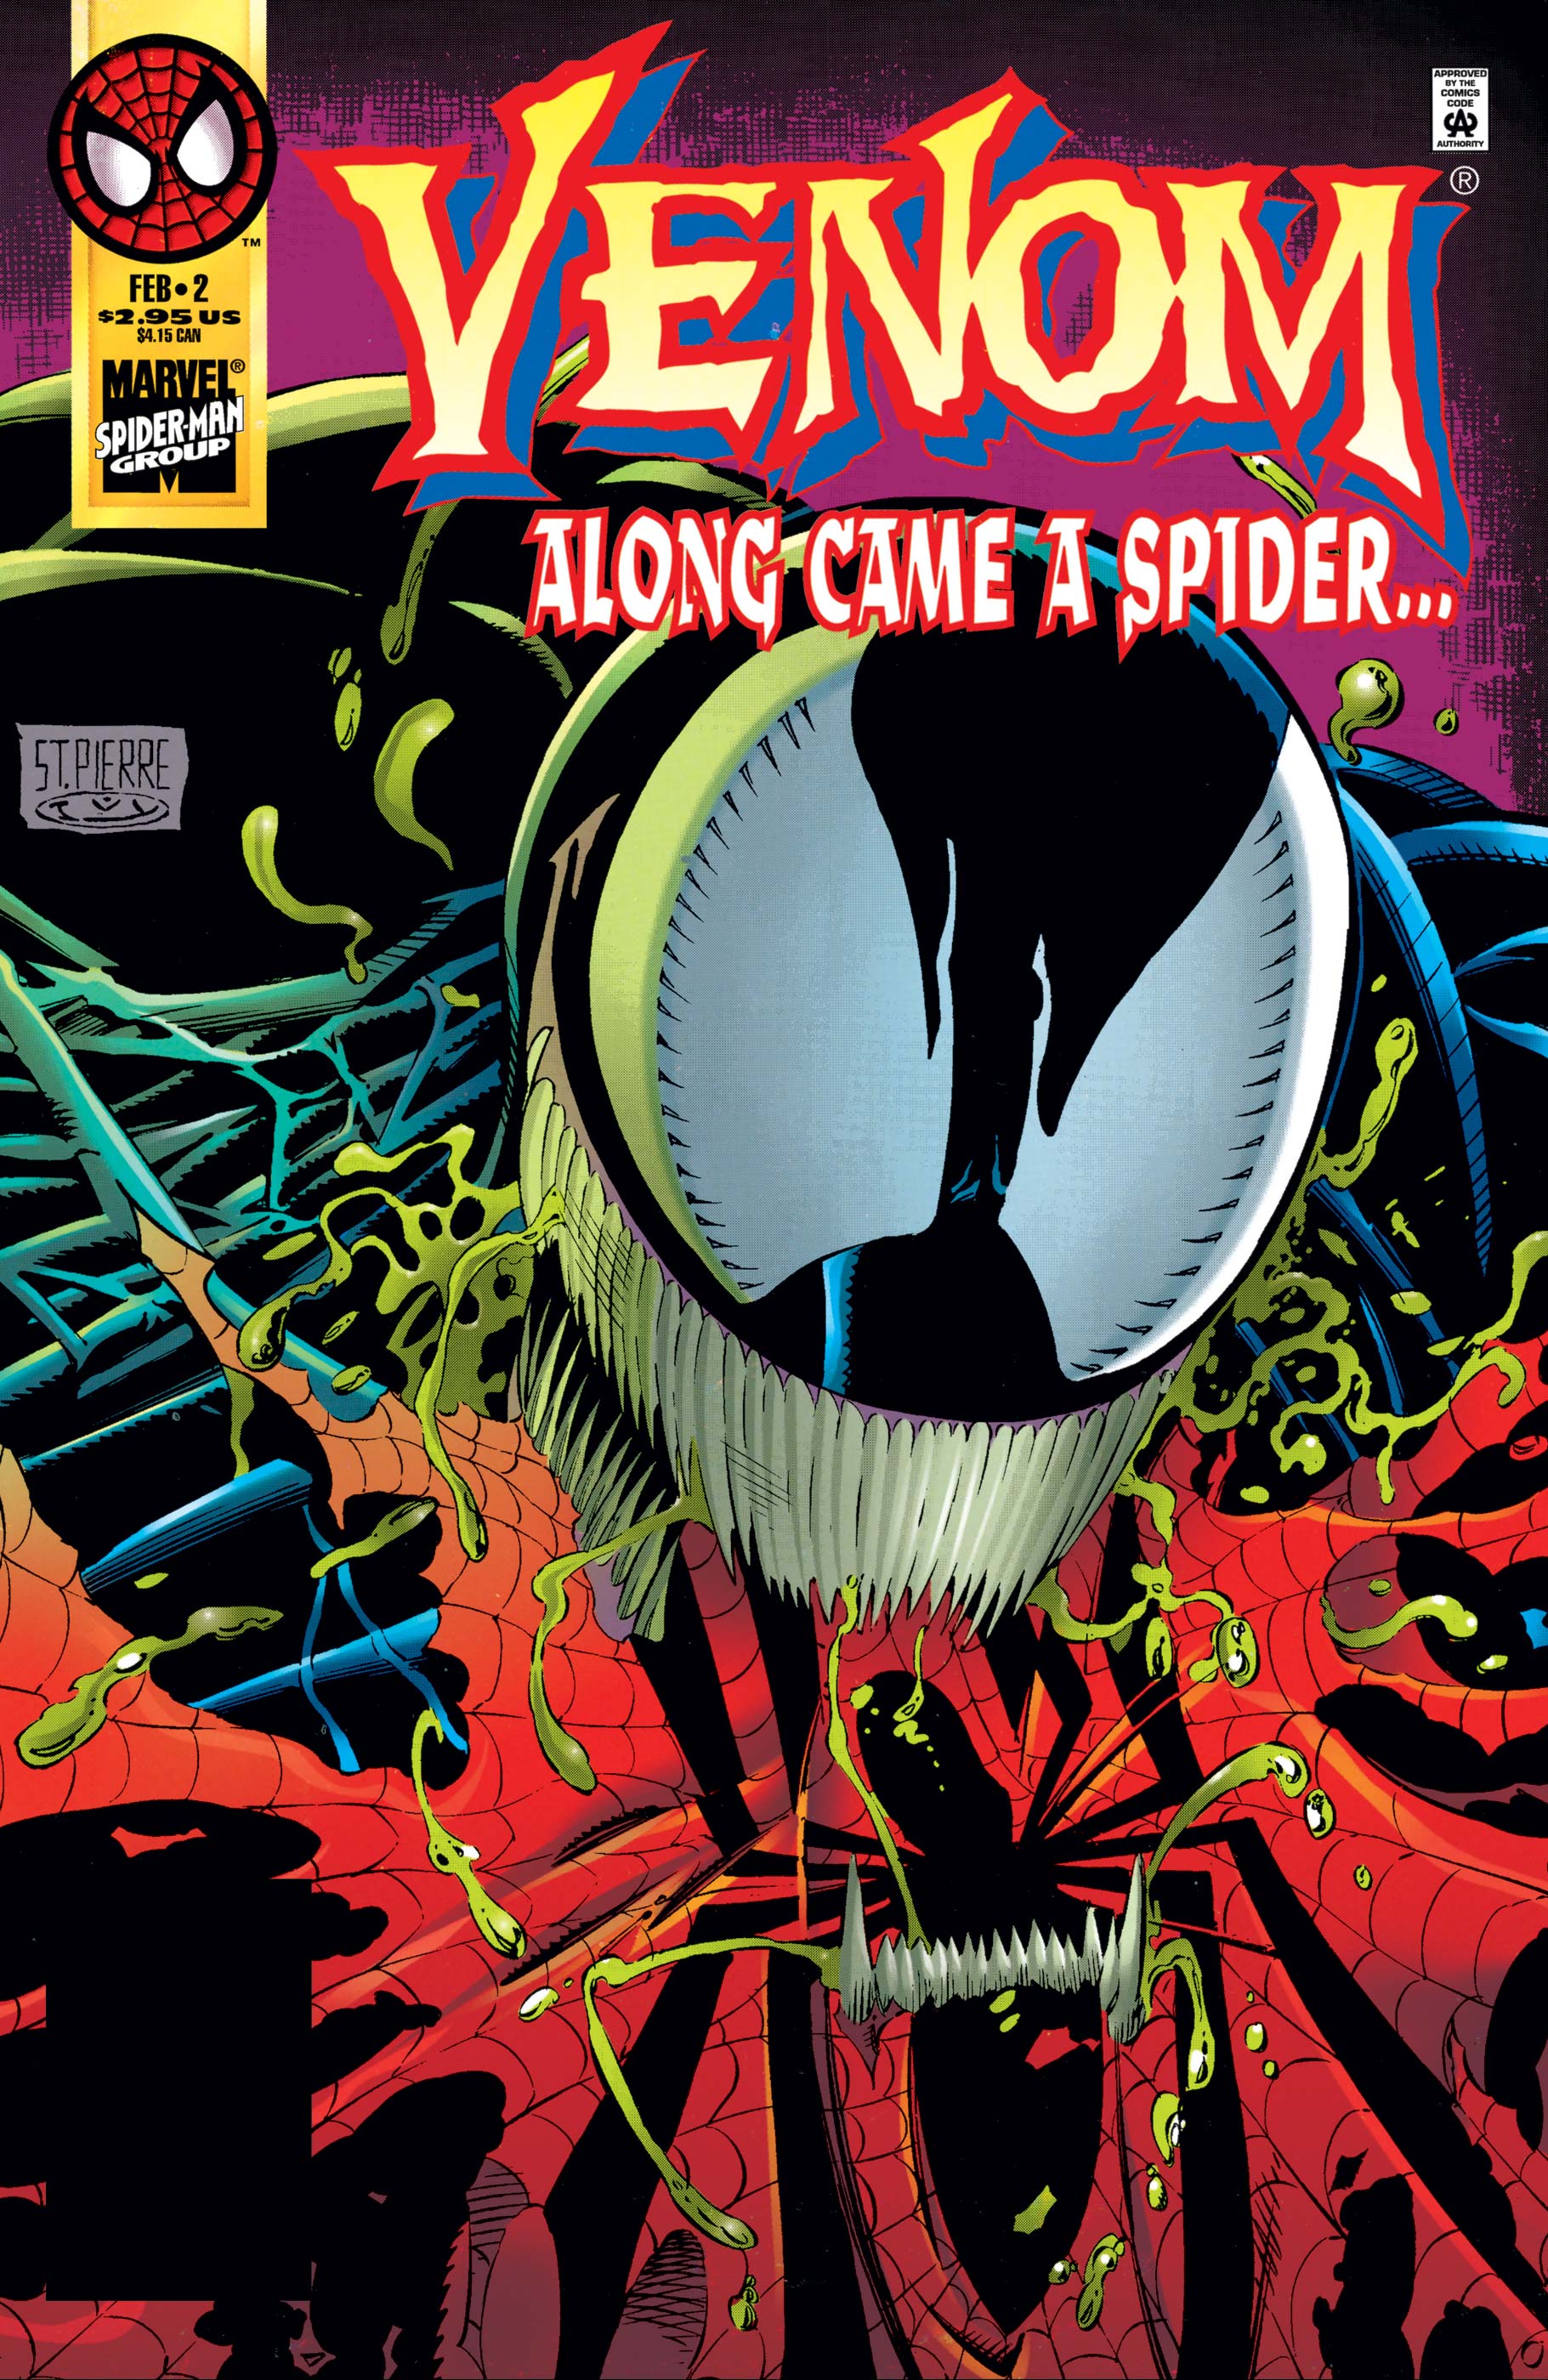 Venom: along came a spider...